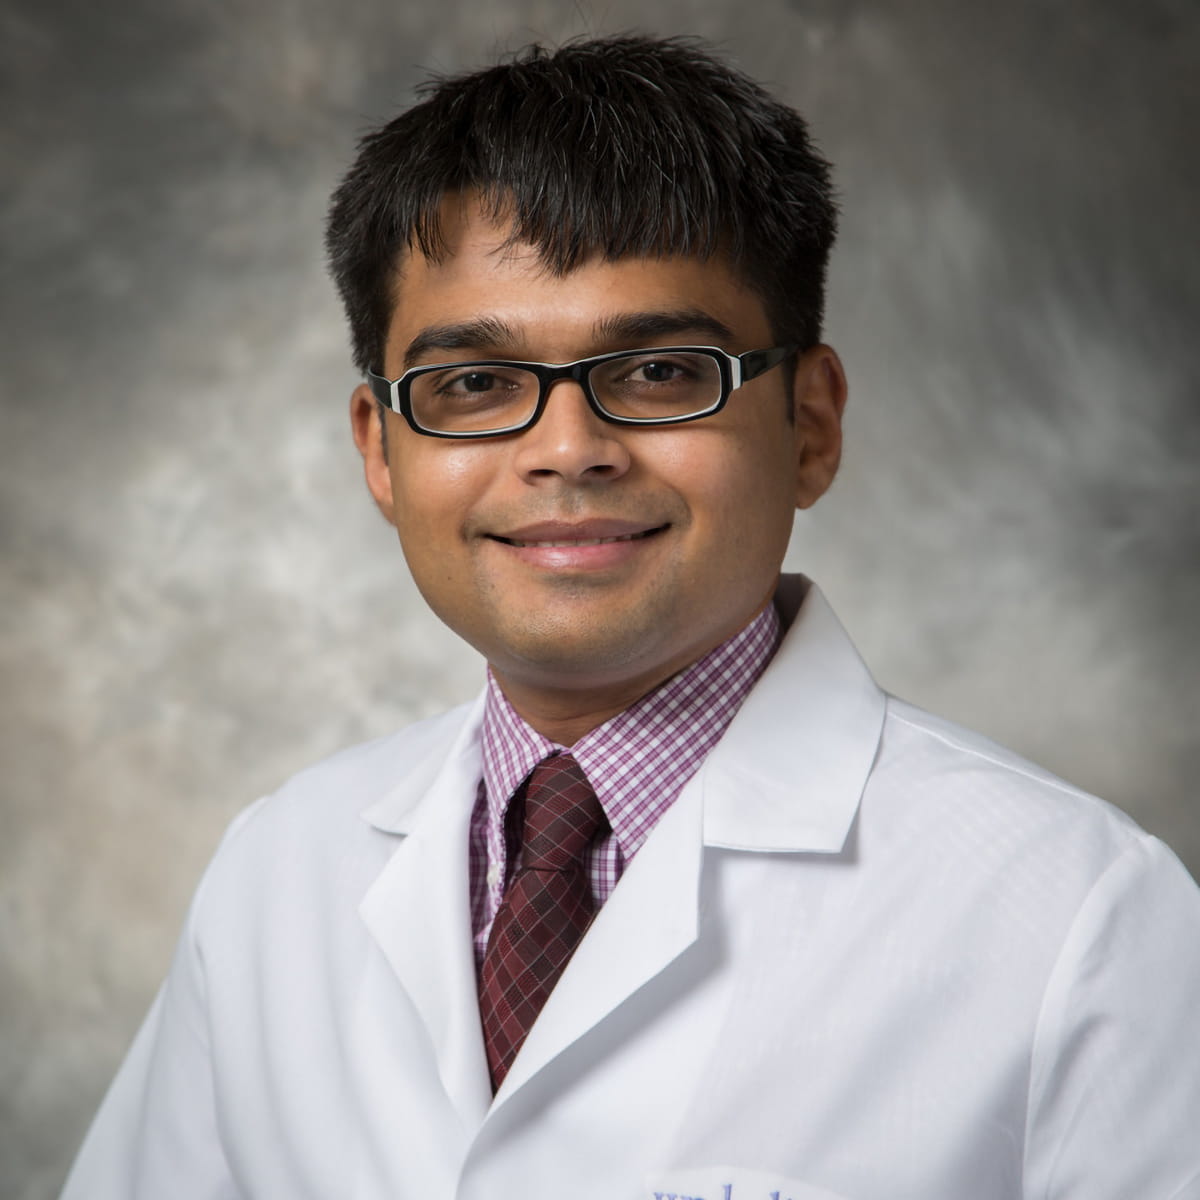 A friendly headshot of Nirav Patel, MD